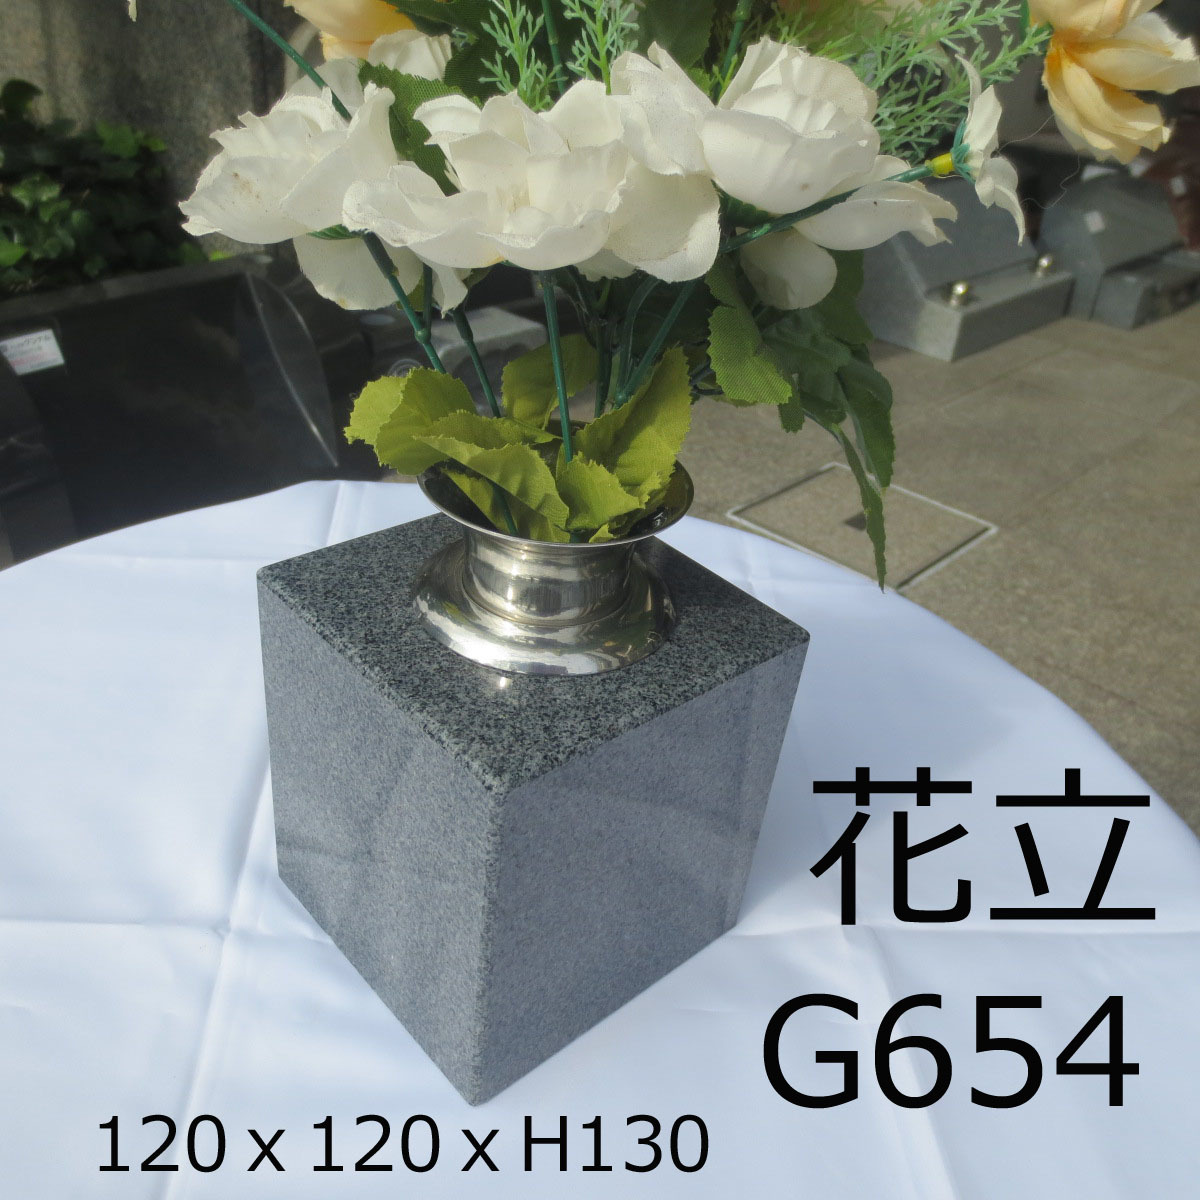 【海外 正規品】 ステンレス G654 グレー系 青御影石 花瓶 1個 花立 墓石 花筒 送料無料！ みかげ石 置くだけ 工事不要 ペット墓にも 仏具一般